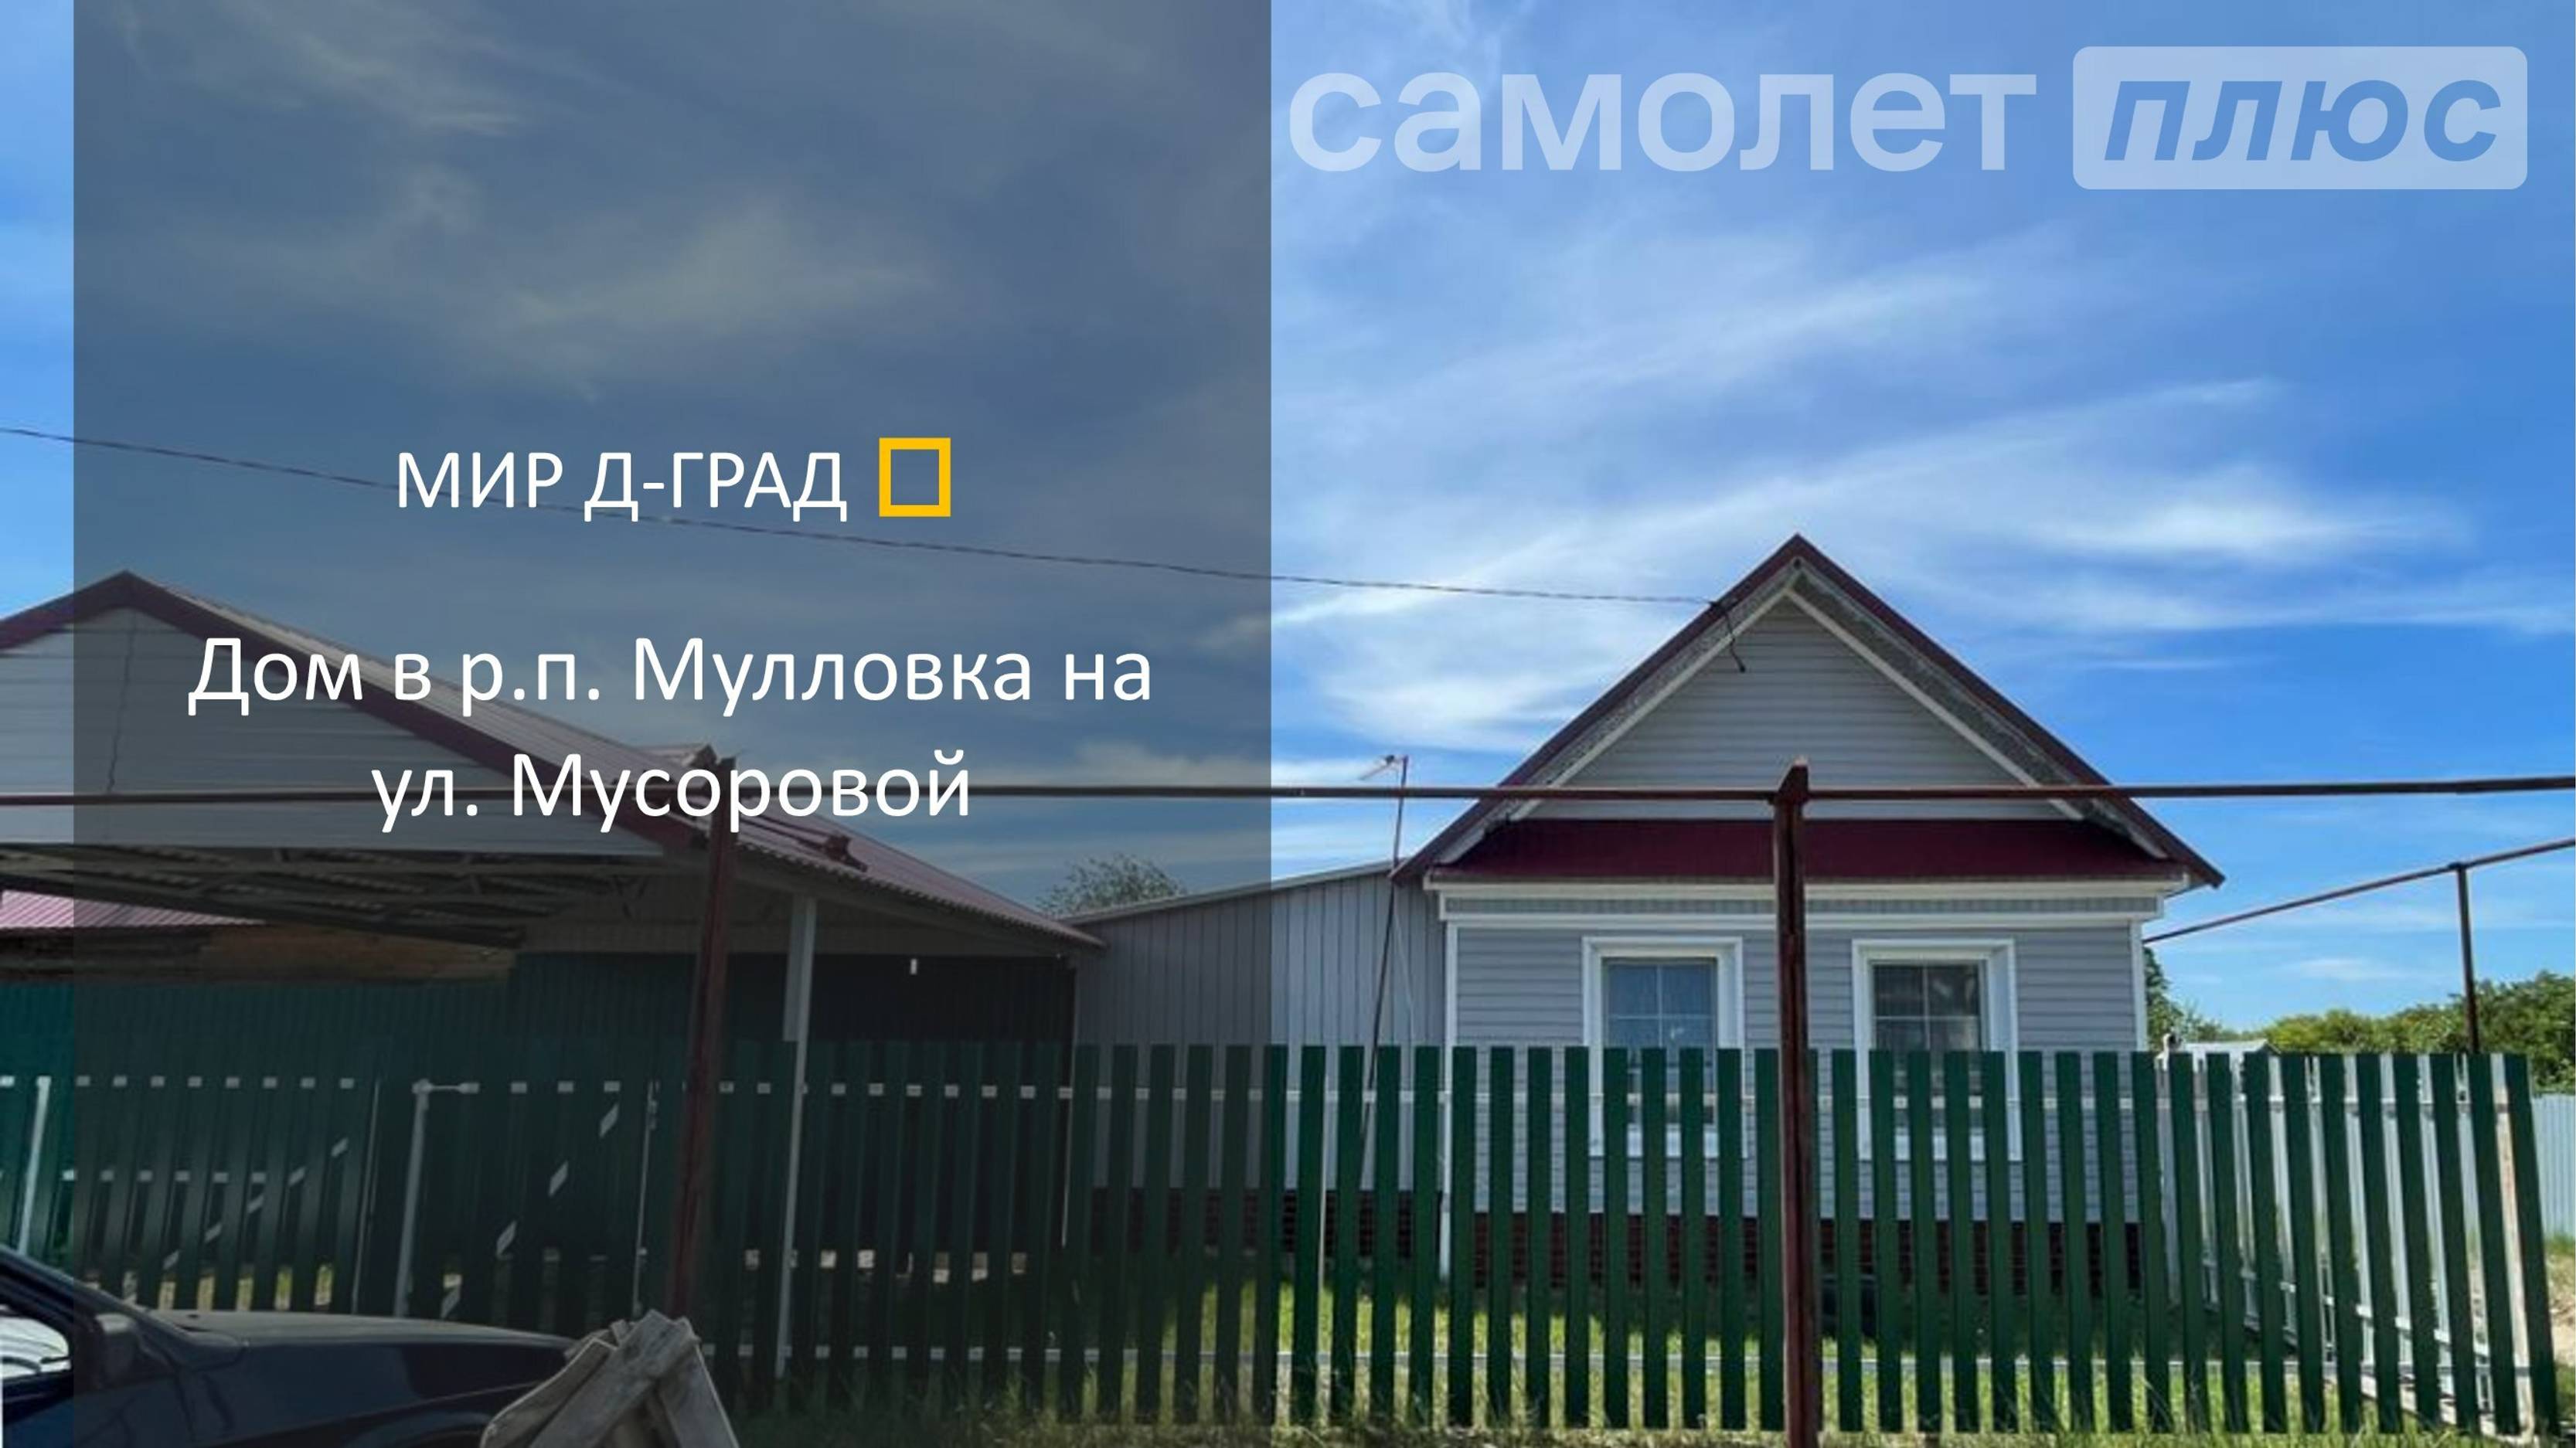 Дом в р.п. Мулловка на ул. Мусоровой, 55 м², на участке 11 соток, Ульяновская область